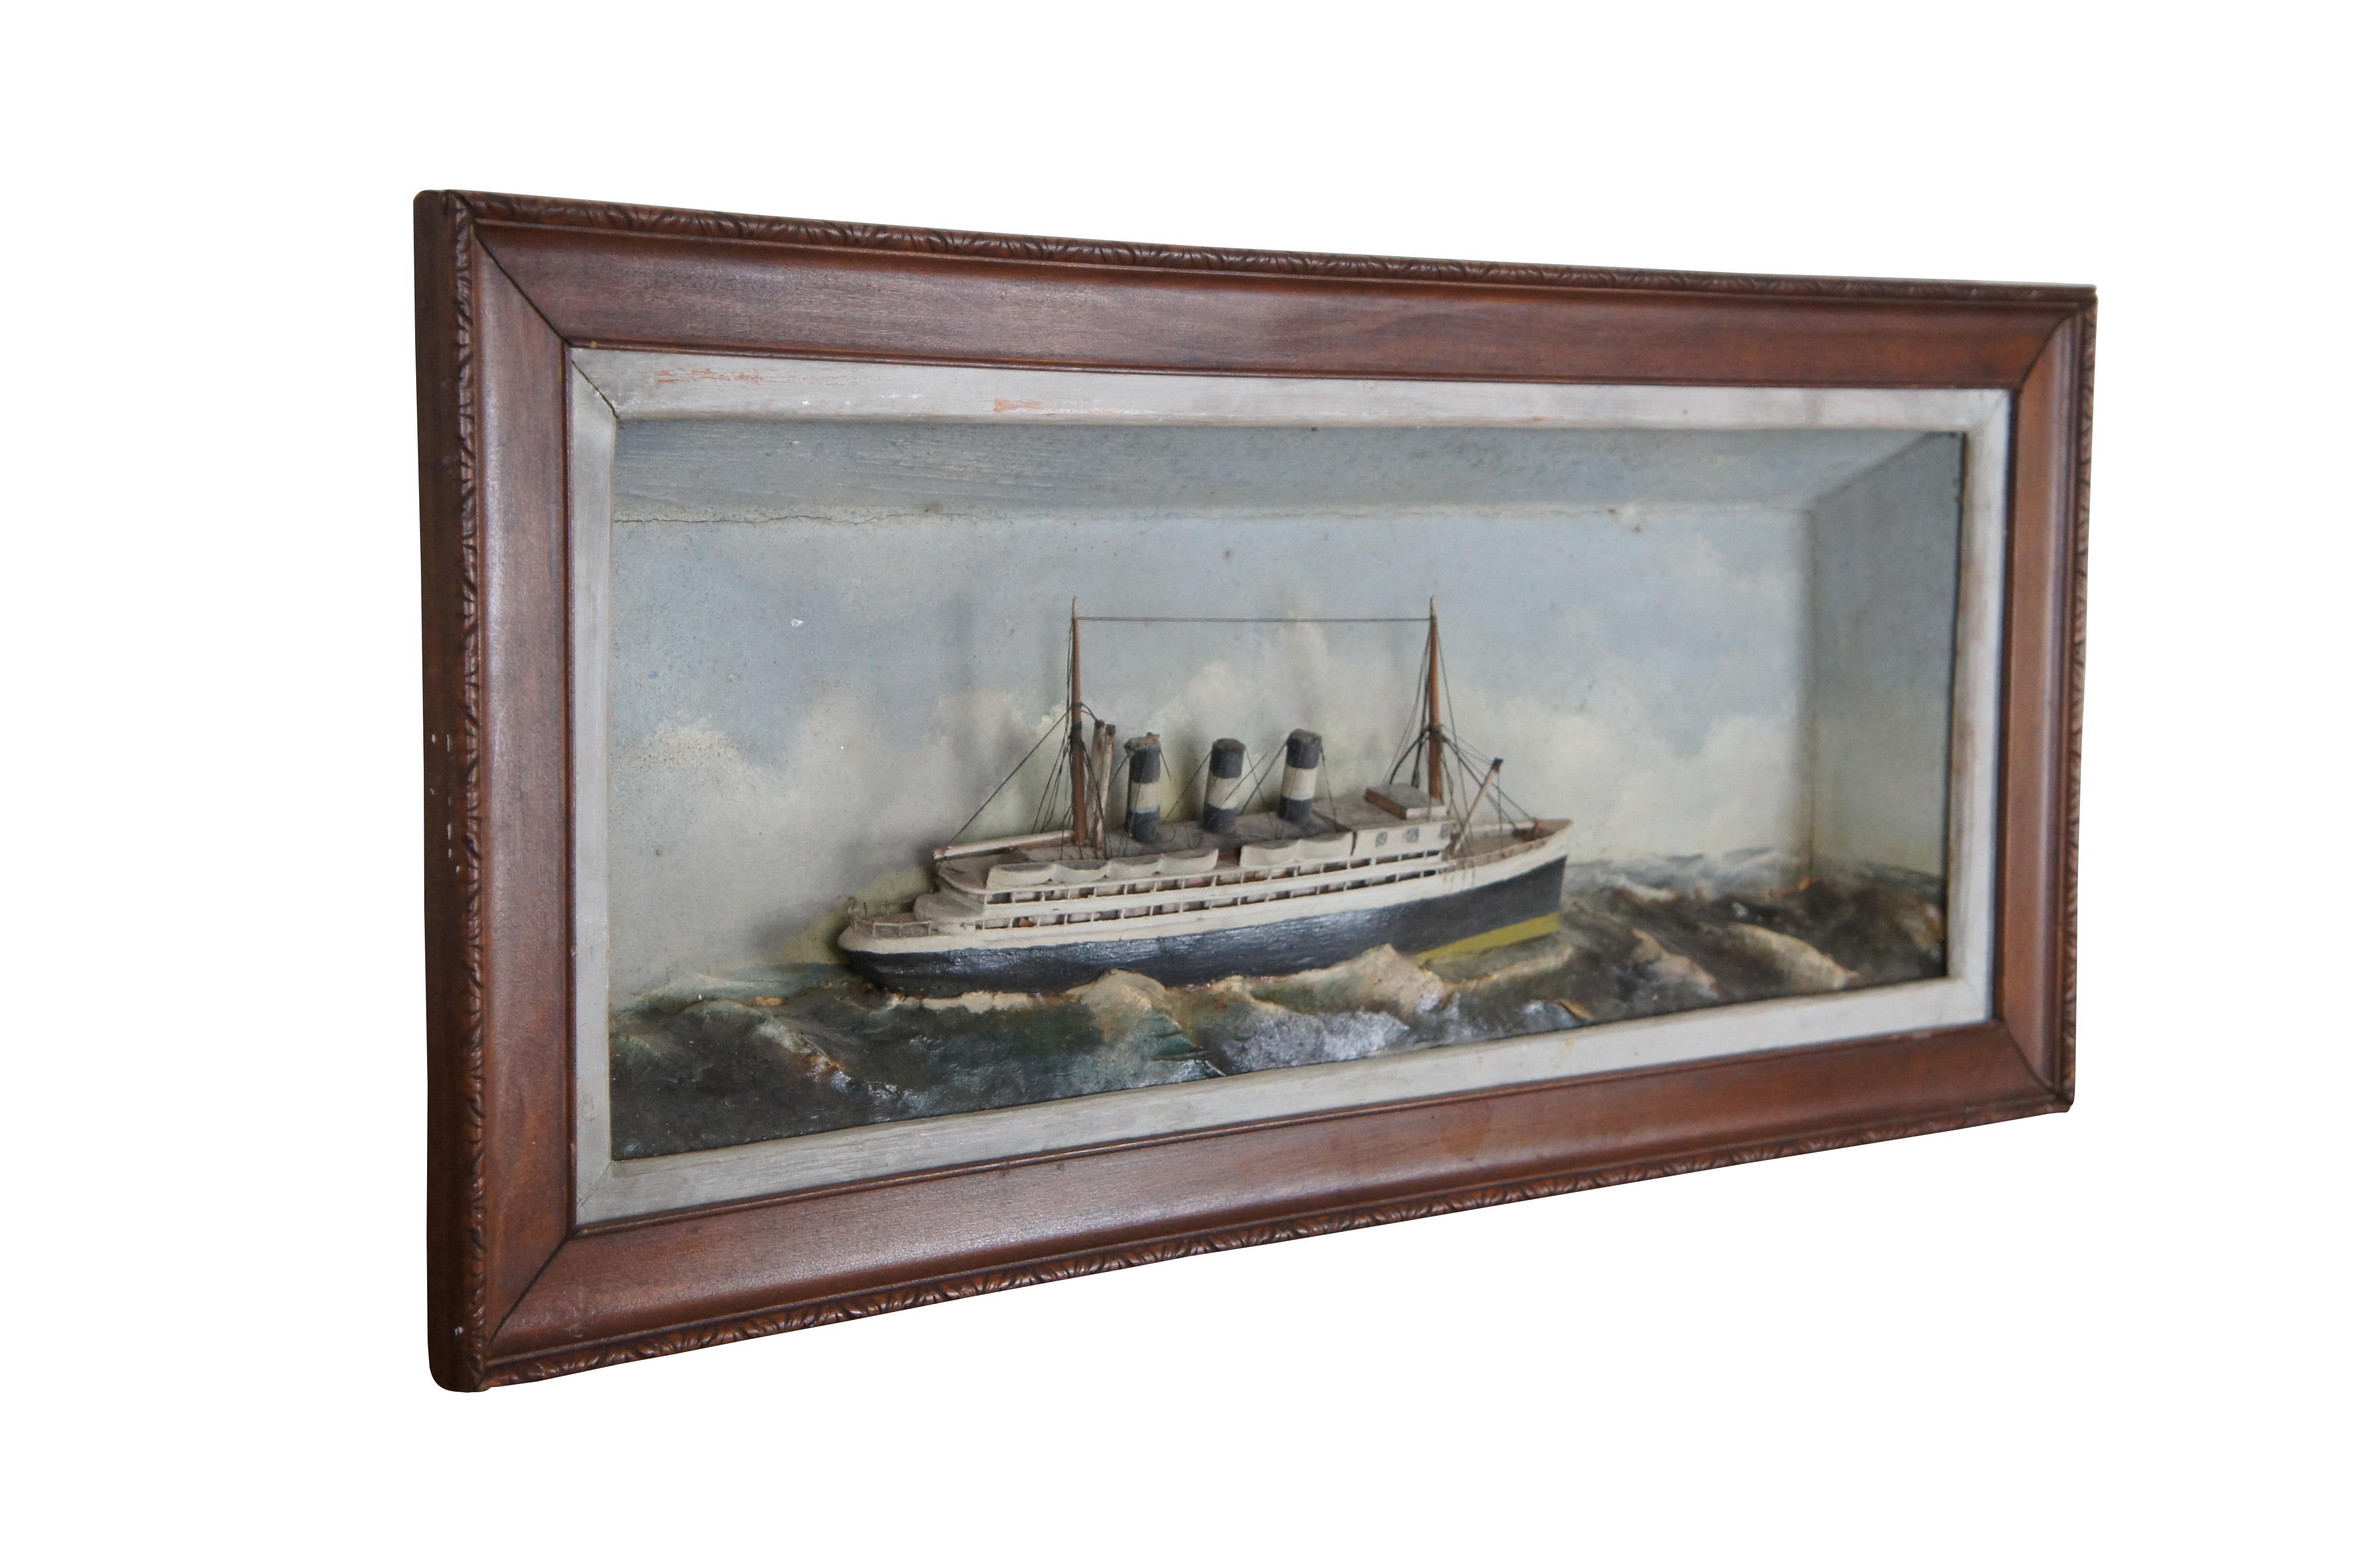 Diorama antique d'art populaire en trois dimensions représentant un bateau à vapeur /  océanique / navire sur une mer agitée. Le modèle est placé dans une boîte d'ombre rectangulaire avec des bordures blanches et un cadre en bois brun avec une